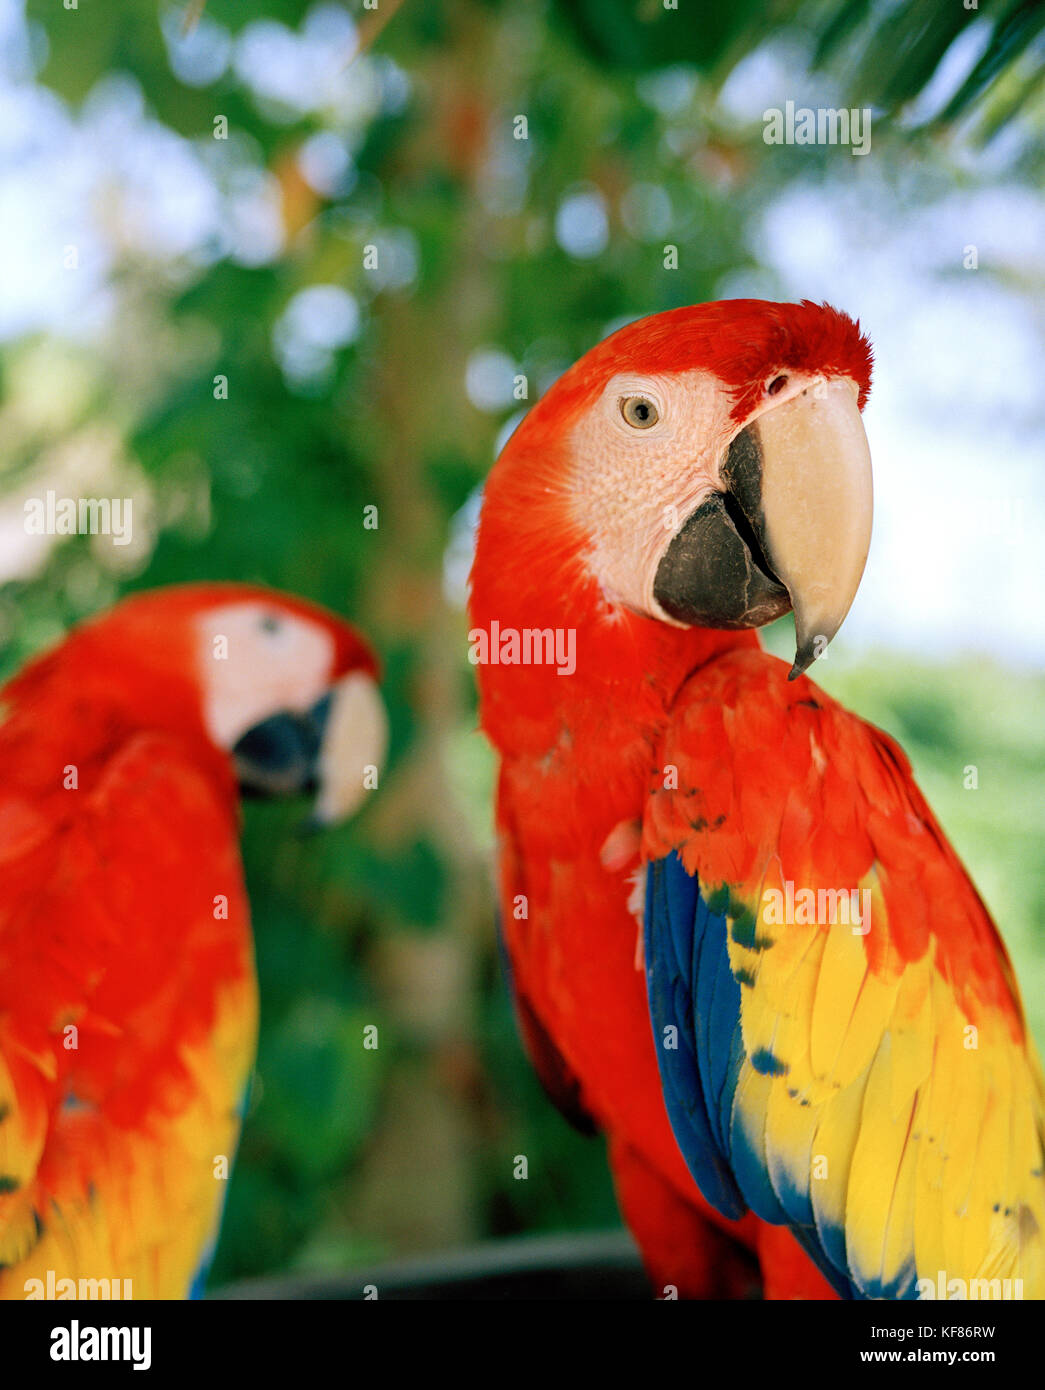 MEXICO, Maya Riviera, close-up of scarlet macaws sitting in a tree, Yucatan Peninsula Stock Photo